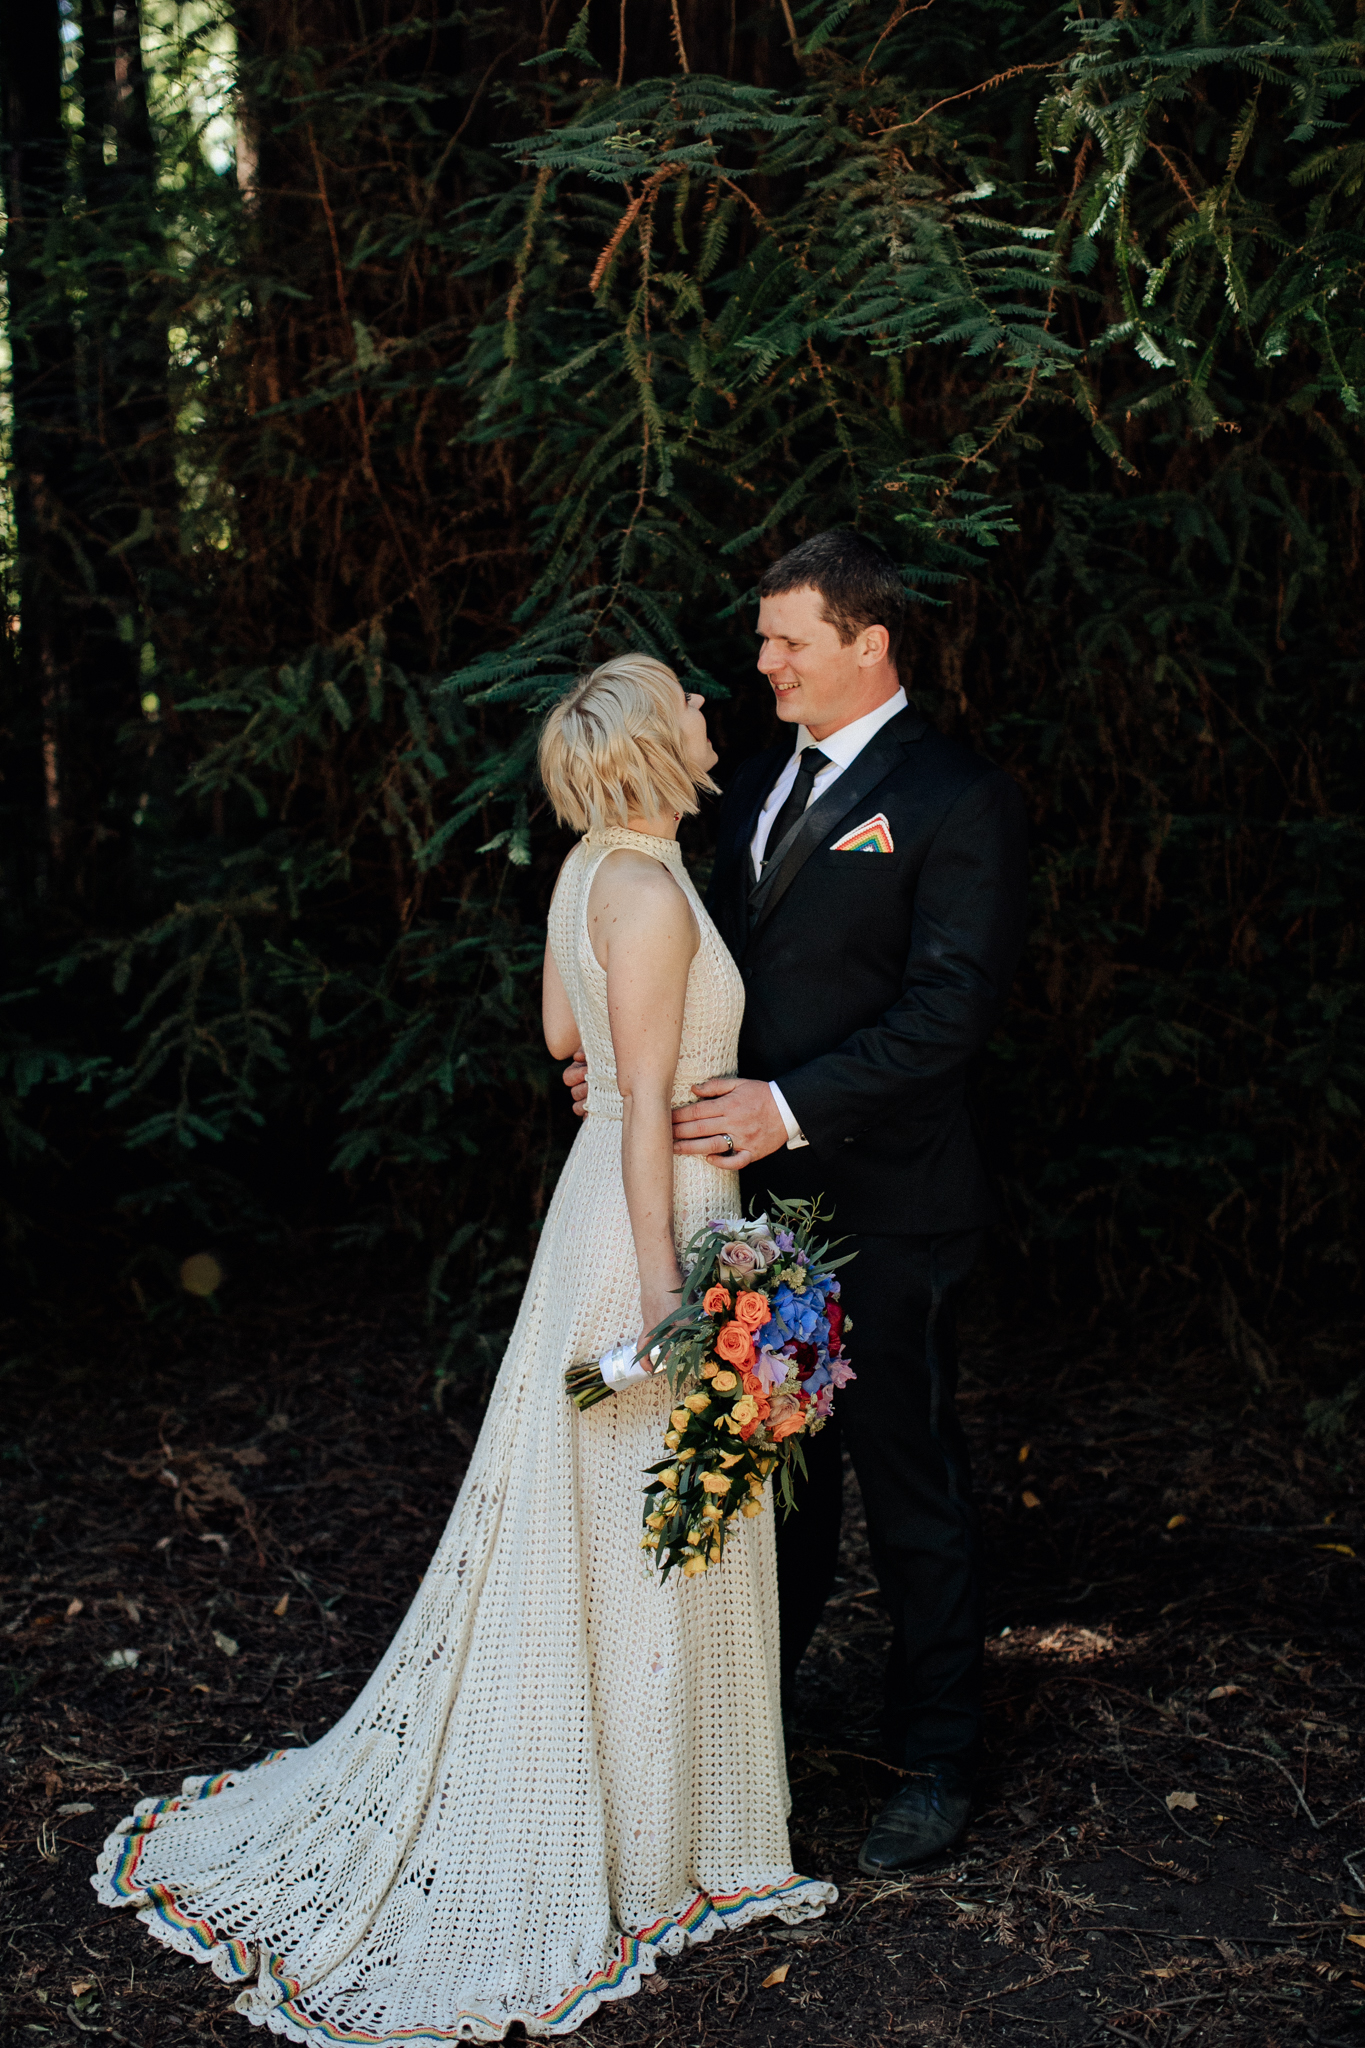 Documentary Style Wedding Photography Bay Area - designerexperts